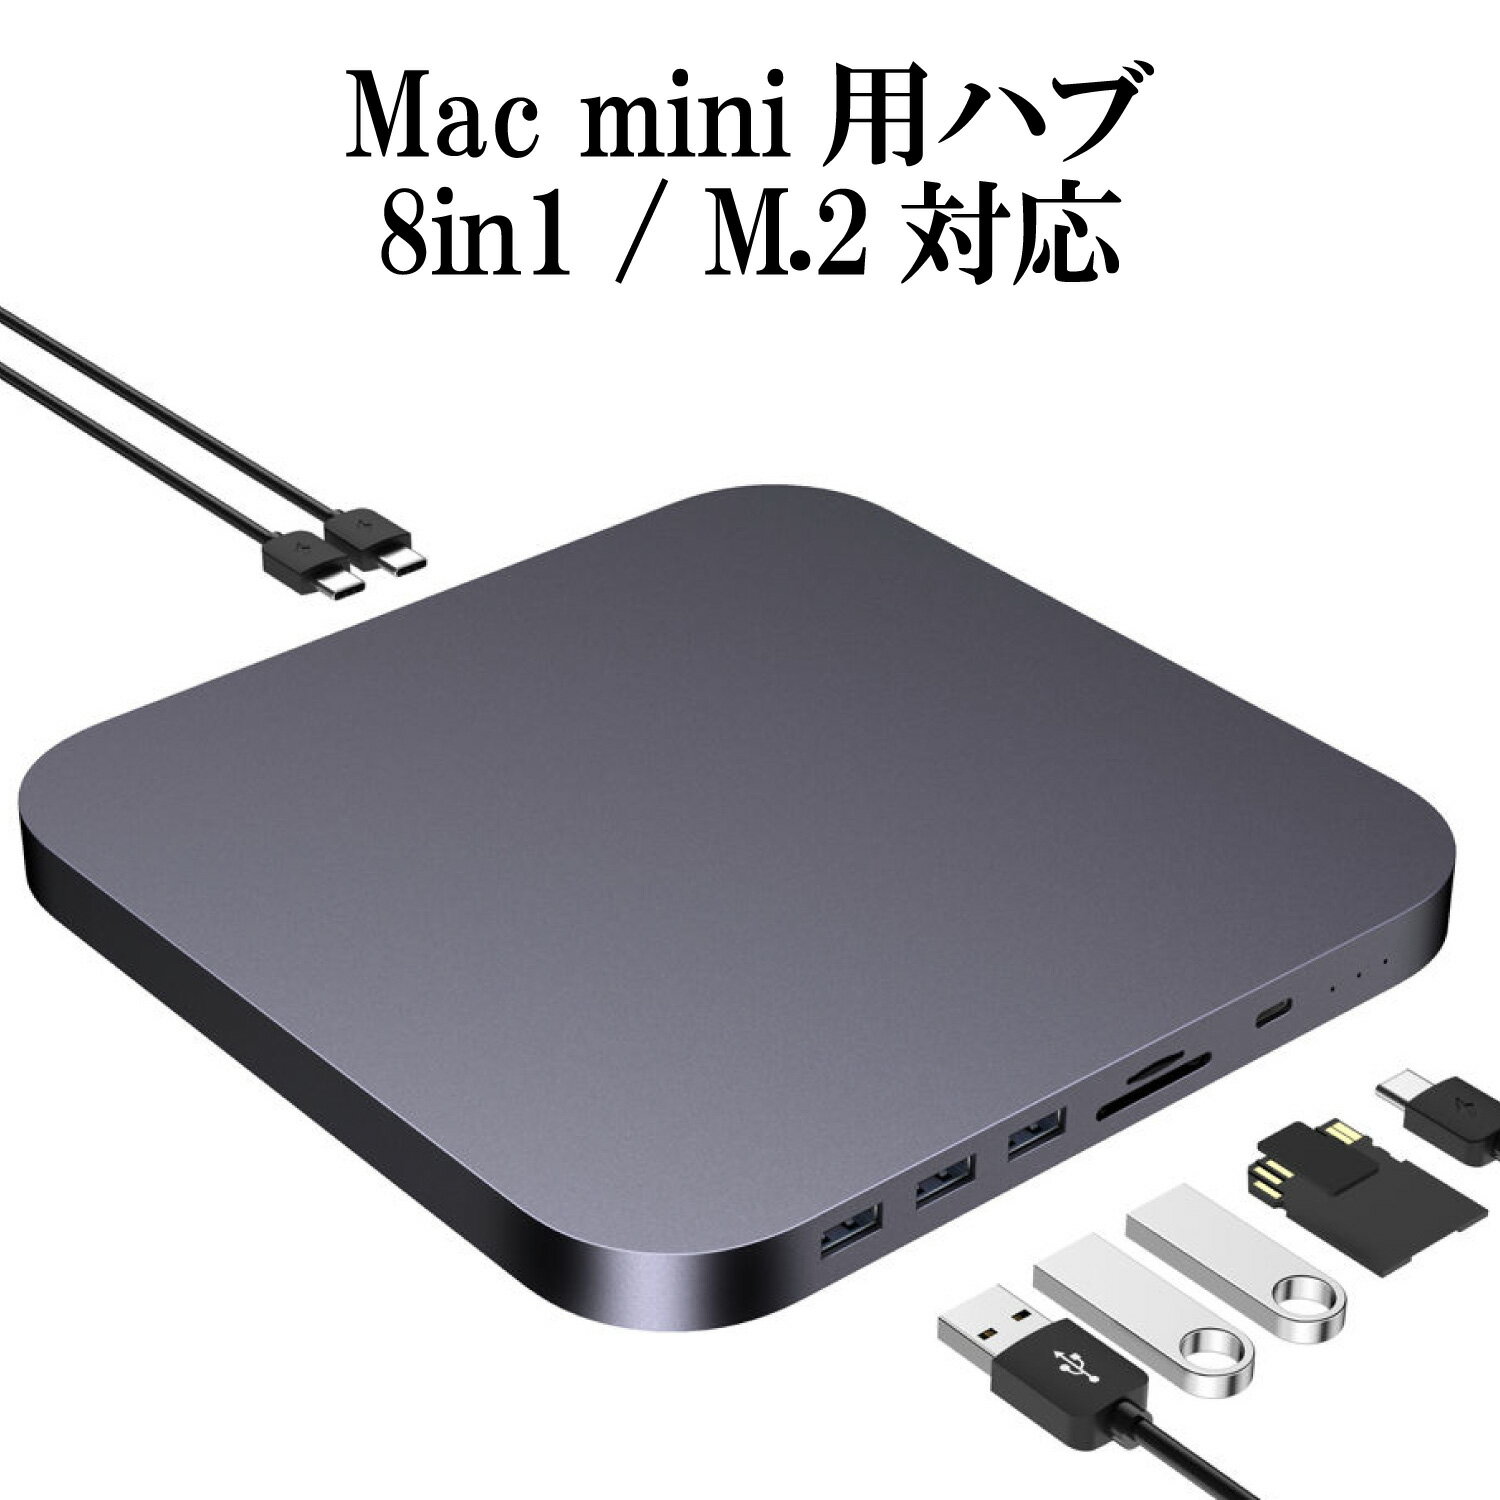 Mac mini ドッキングステーション ( 8in1 TypeC ハブ ) スペースグレー / M.2 2.5インチ SATA接続 SSD / HHD スロット (外付け SSD ケース ) / TypeA USB3.0 TypeC USB3.1 SD/TF microSD カードリーダー